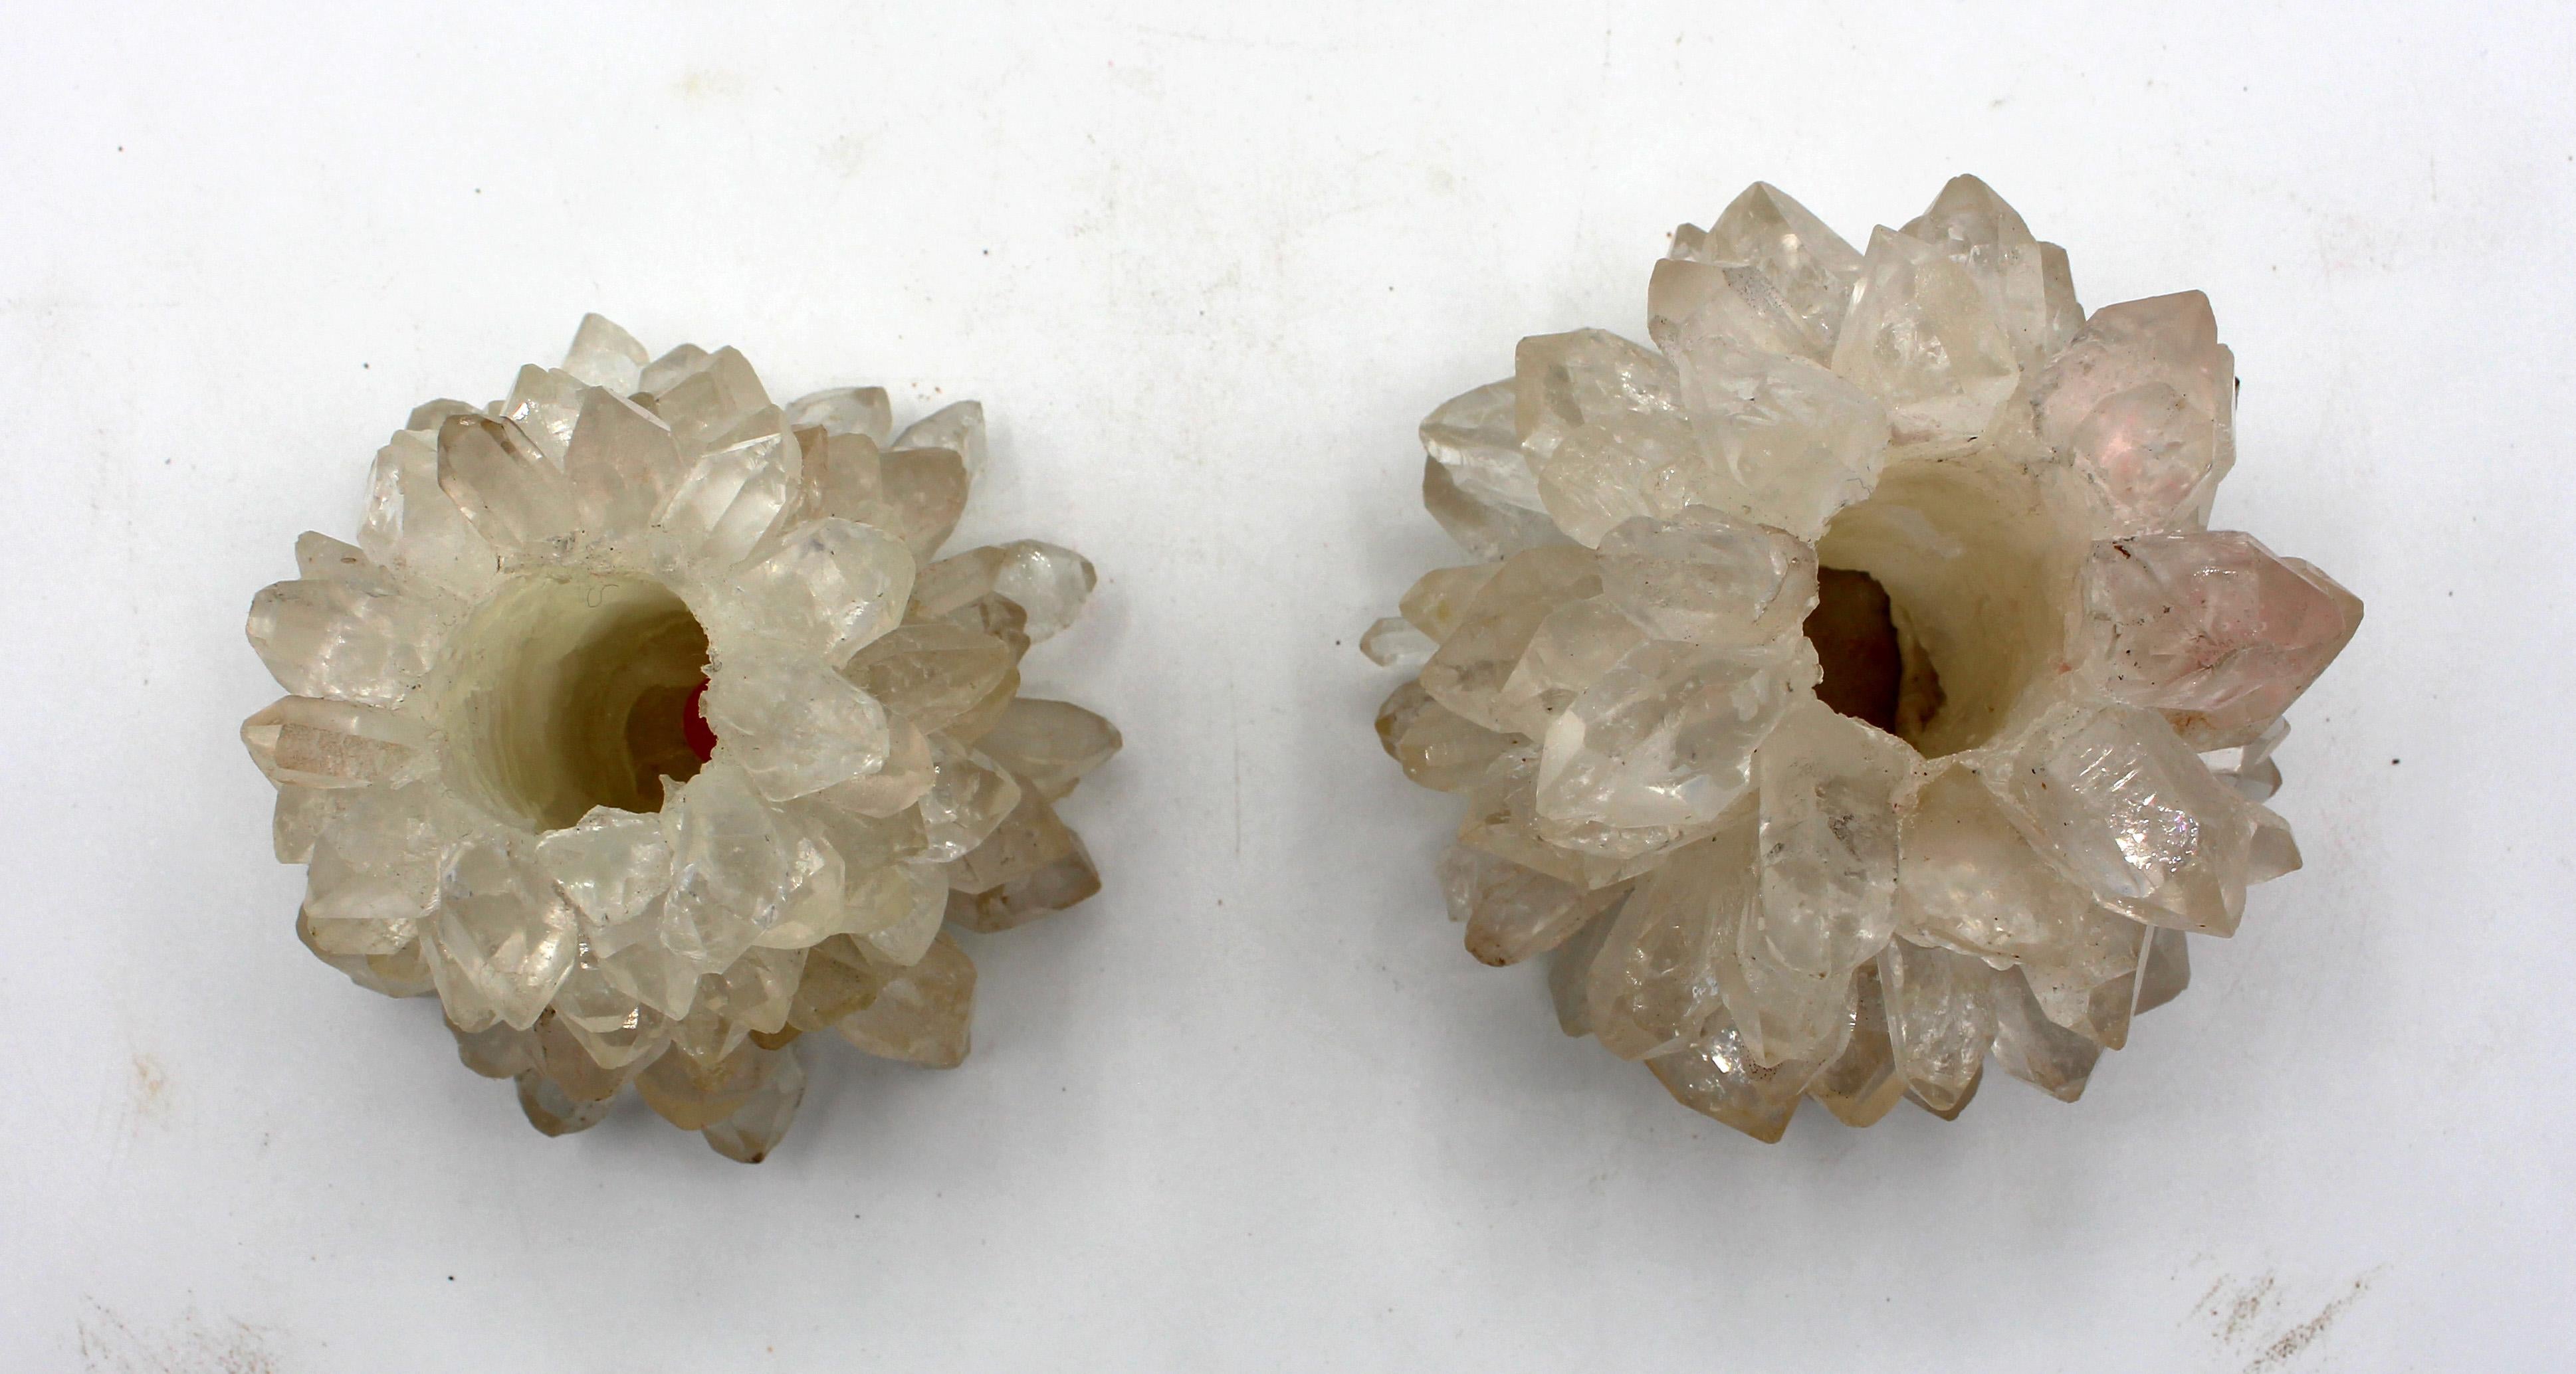 Deux chandeliers en cristal de roche naturel du milieu du XXe siècle, brésiliens. Certains s'attendaient à des pertes mineures au niveau des pointes. L'un est plus conique que l'autre.
Chacune a un diamètre de 3,75 po et une hauteur de 2 7/8 po.